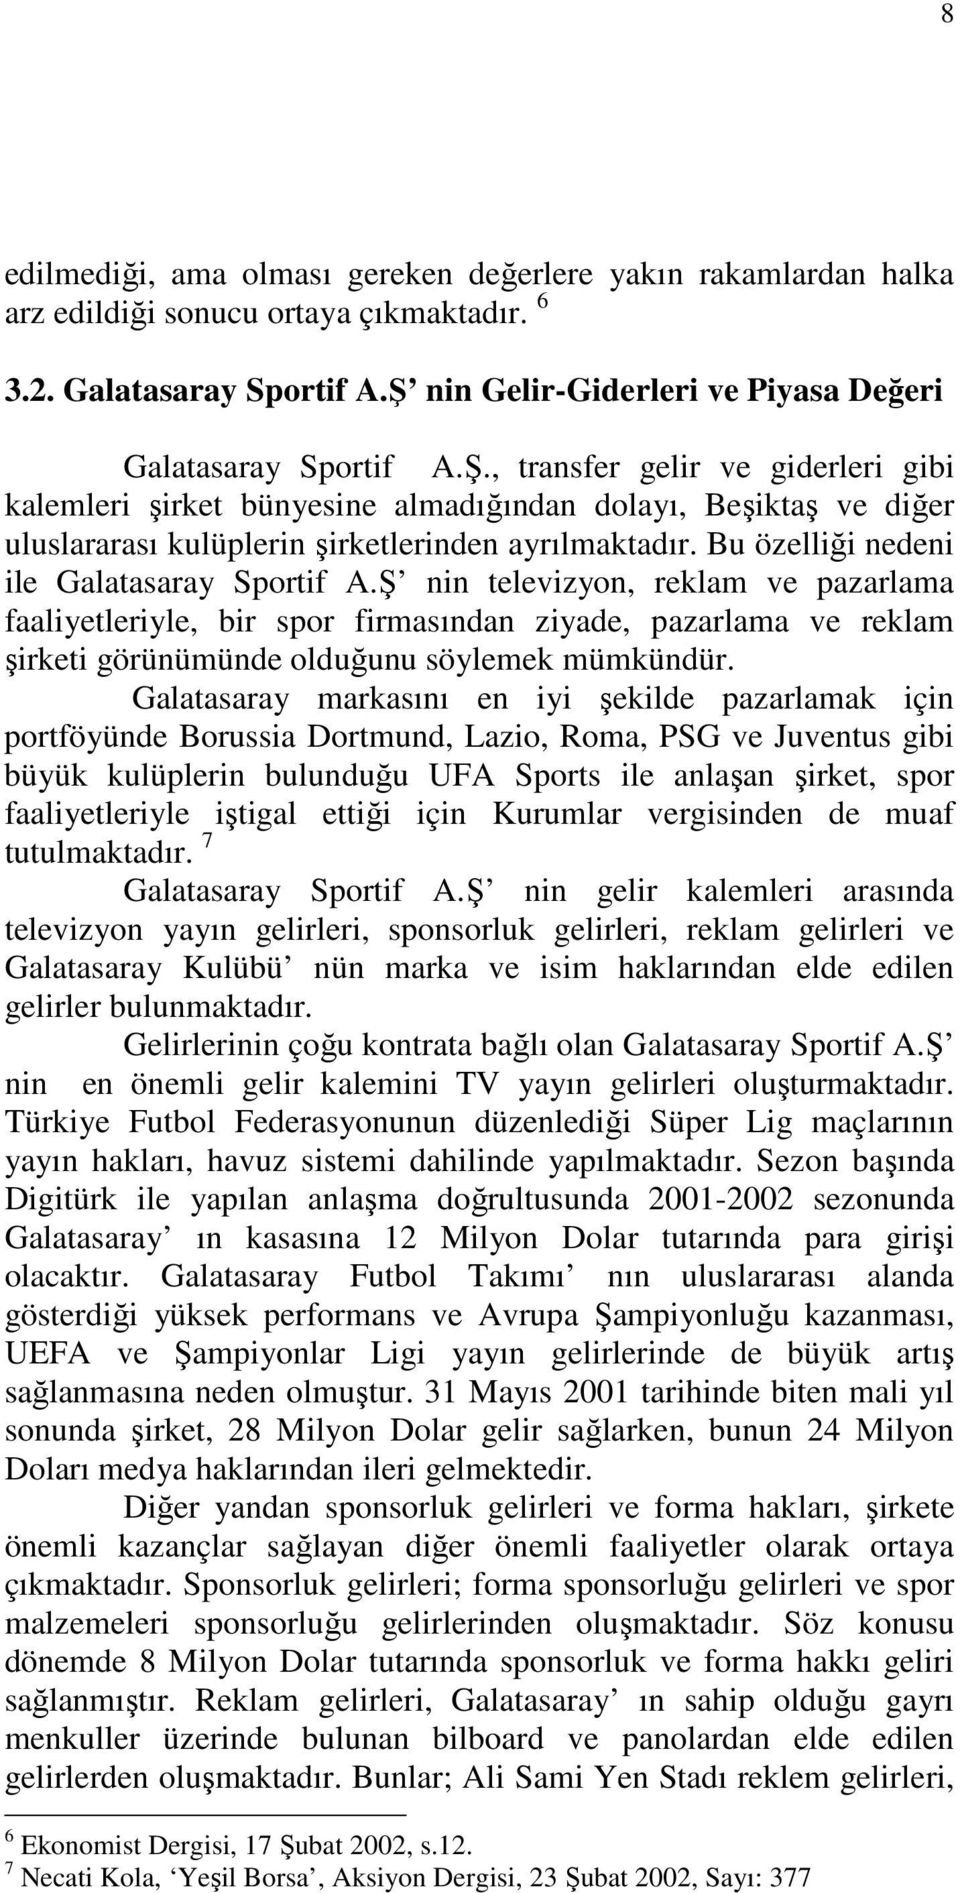 , transfer gelir ve giderleri gibi kalemleri şirket bünyesine almadığından dolayı, Beşiktaş ve diğer uluslararası kulüplerin şirketlerinden ayrılmaktadır. Bu özelliği nedeni ile Galatasaray Sportif A.